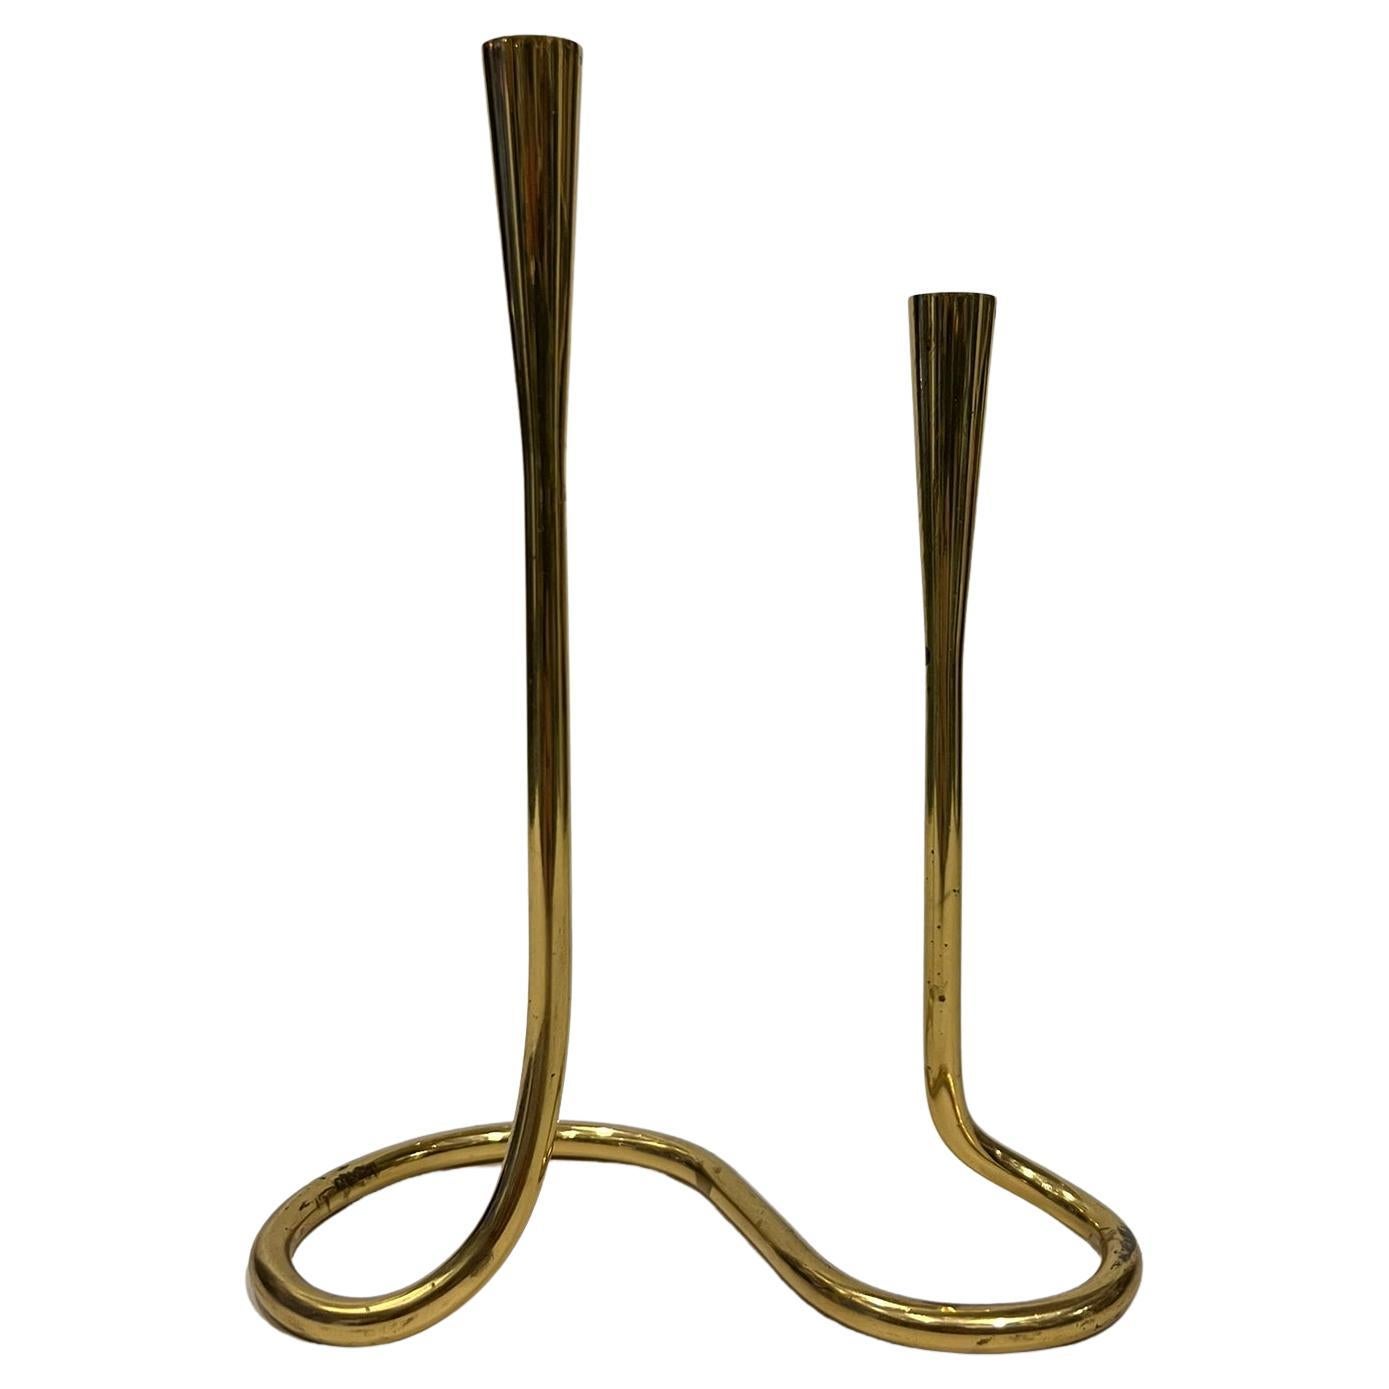 Serpentinenförmiger Messing-Kerzenhalter für Illums Bolighus 1960er Jahre, nach dänischem Design, hergestellt in Deutschland 